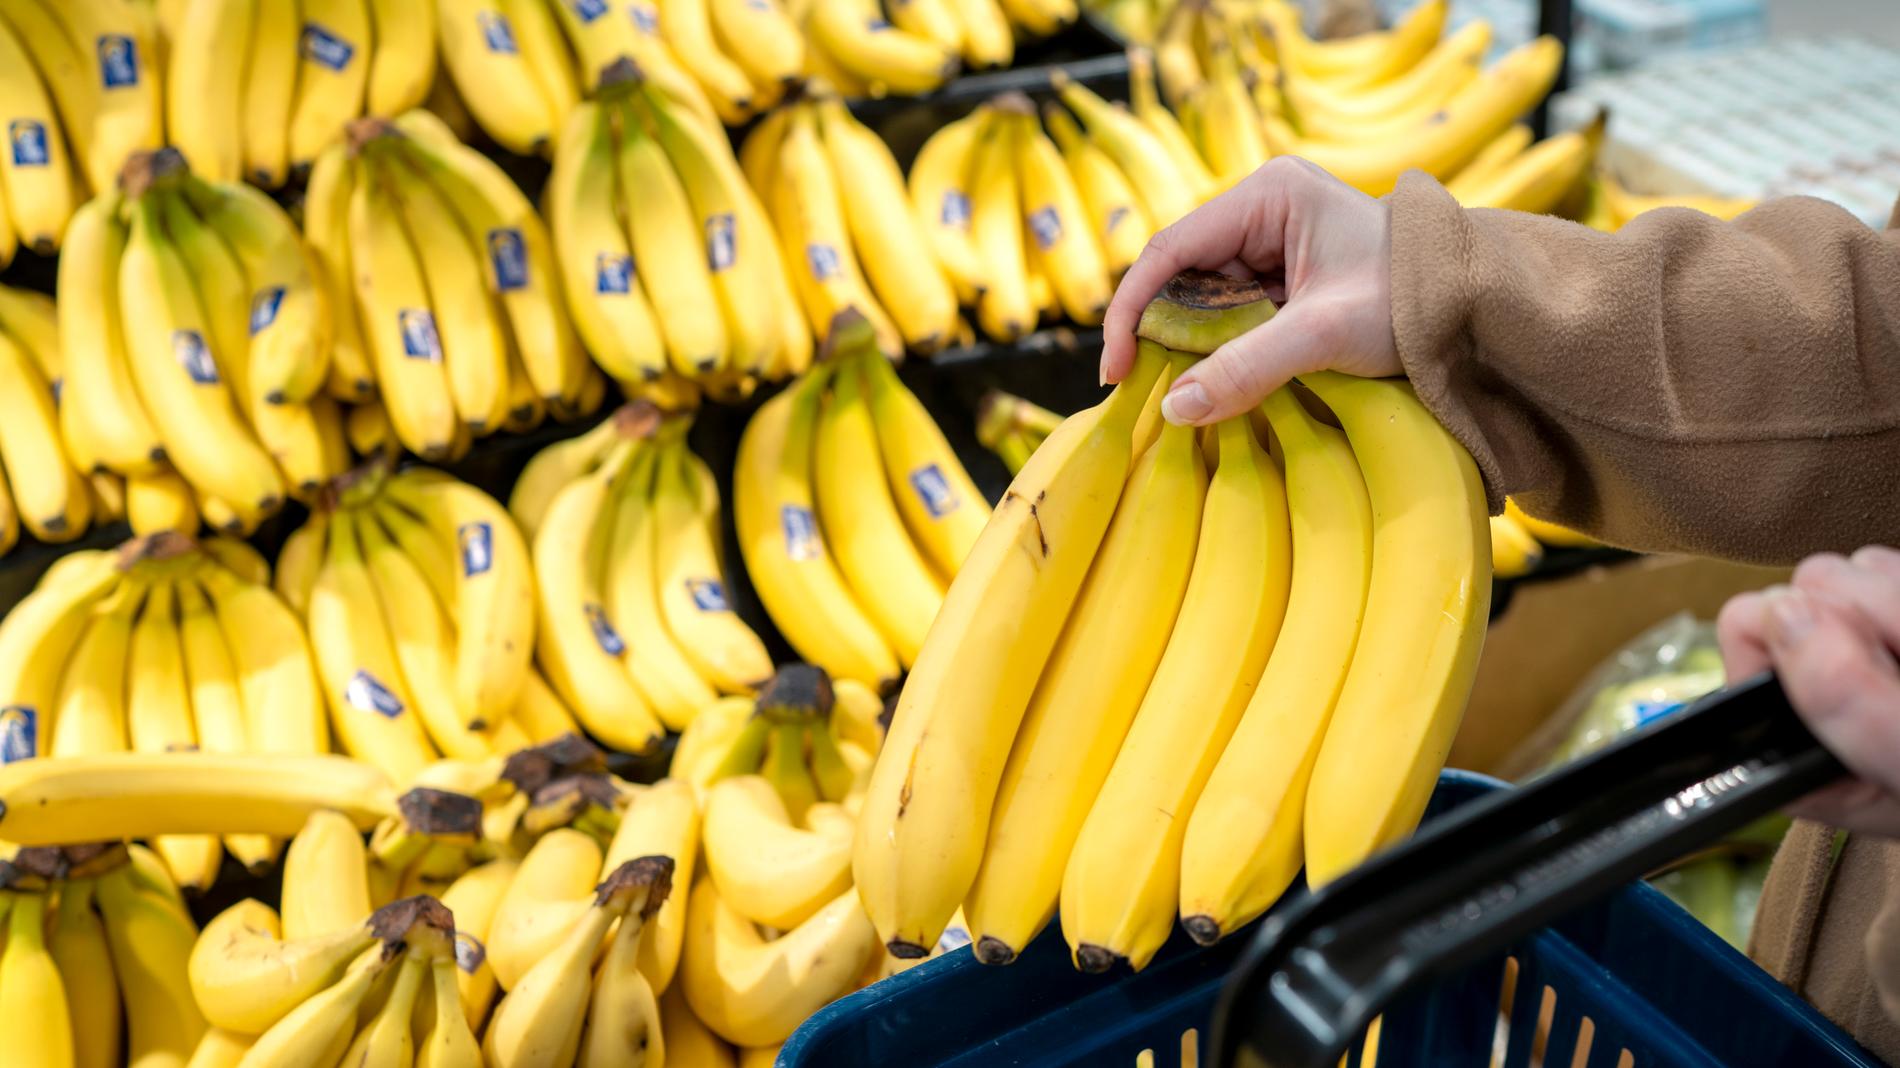 Stora mängder kokain har hittats bland bananer i flera Lidl-butiker i Tyskland. Arkivbild.